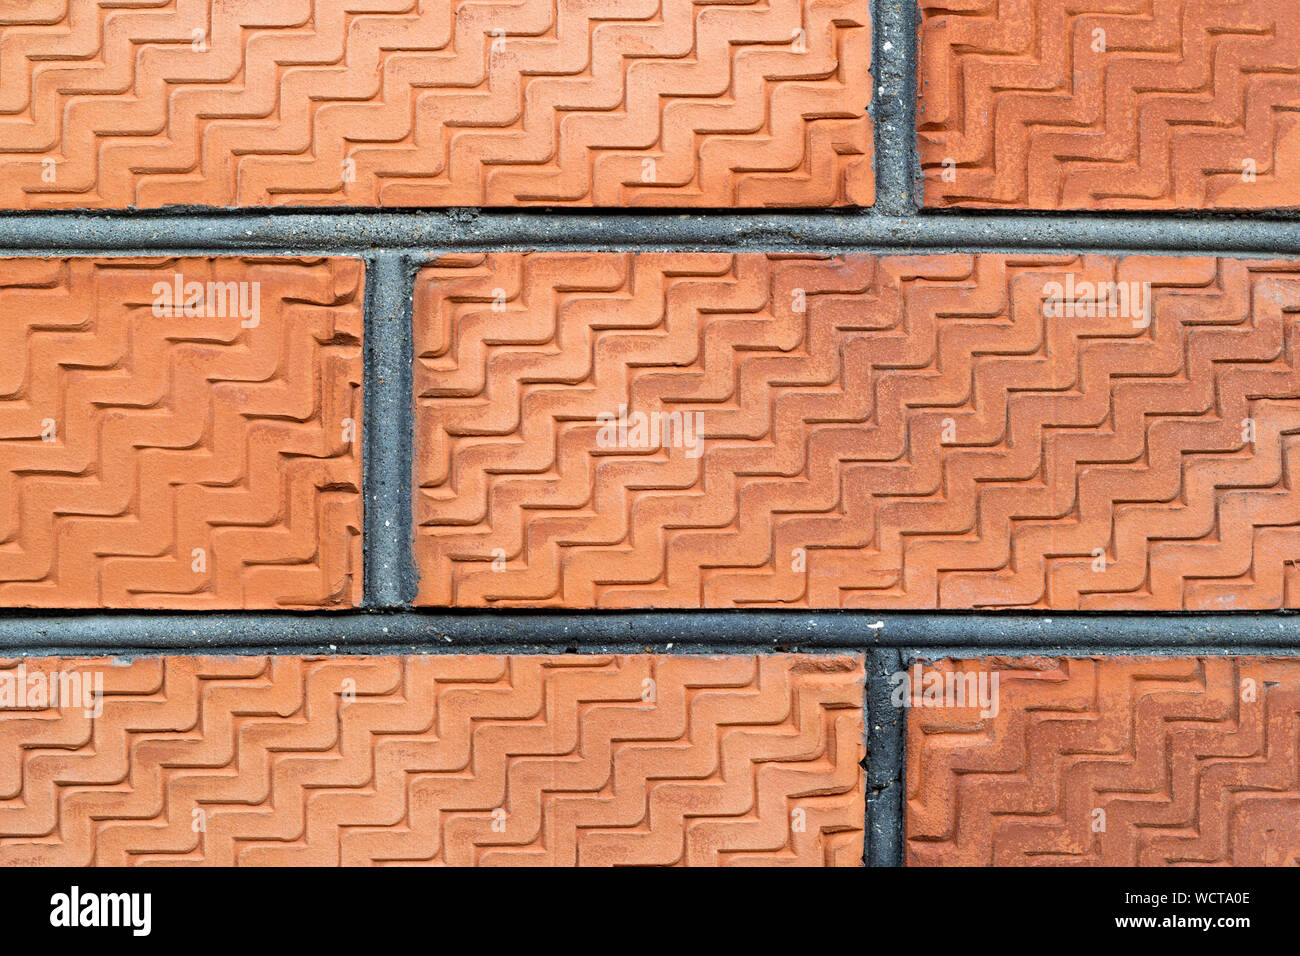 Ancien vitrail surmonté mur de brique rouge. Close-up. Un motif sculpté sur la surface. La texture en zigzag. Copier l'espace. Construction piscine photograp Banque D'Images